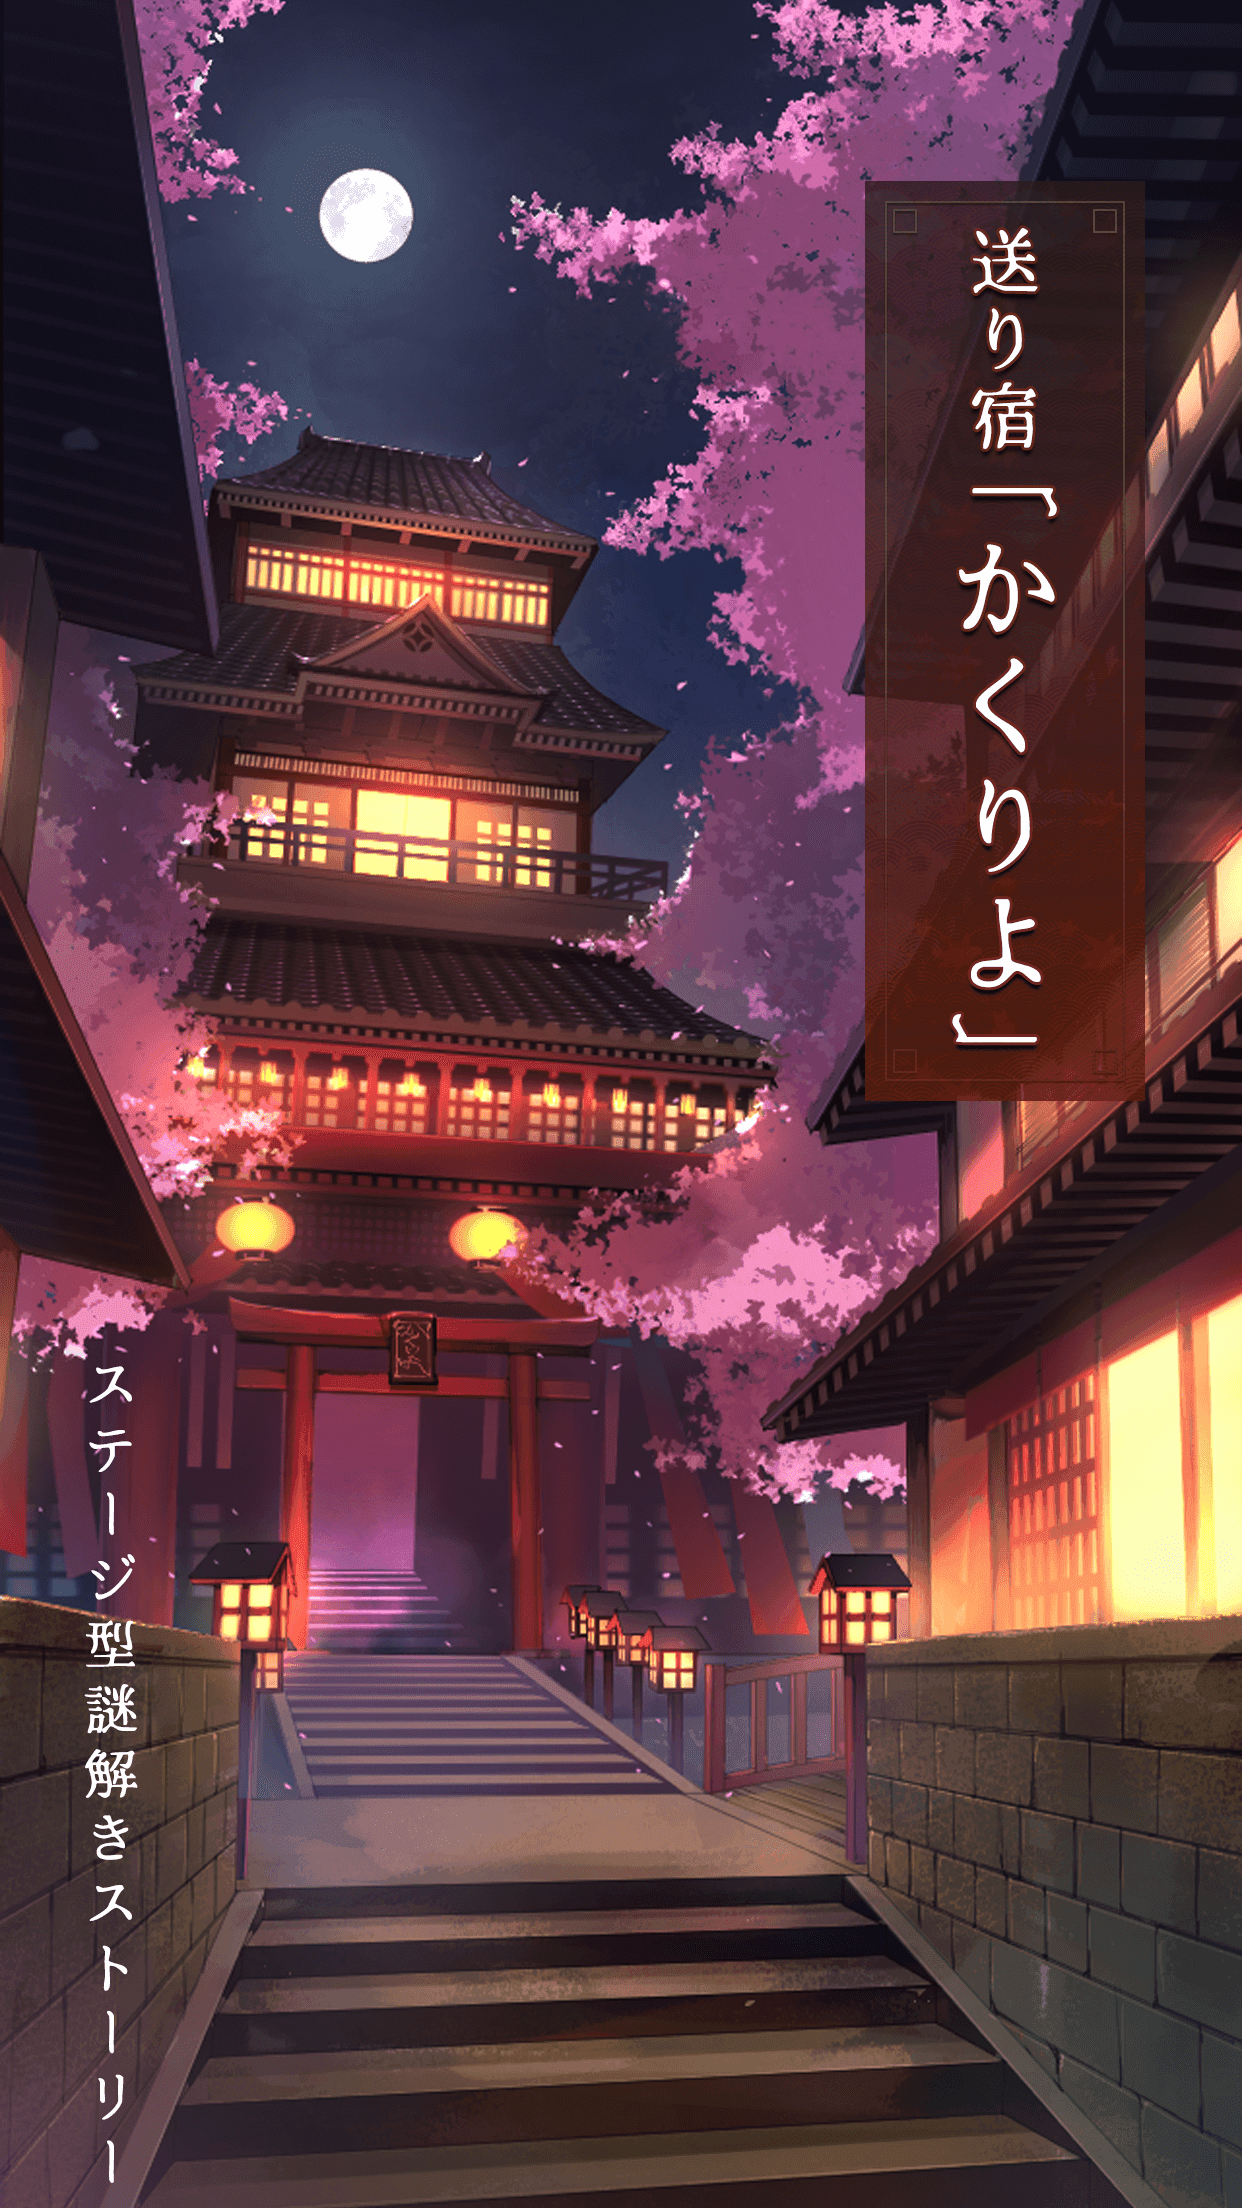 Screenshot 1 of Sending Inn "Kakuriyo" Сценическая история разгадывания тайн 1.6.0